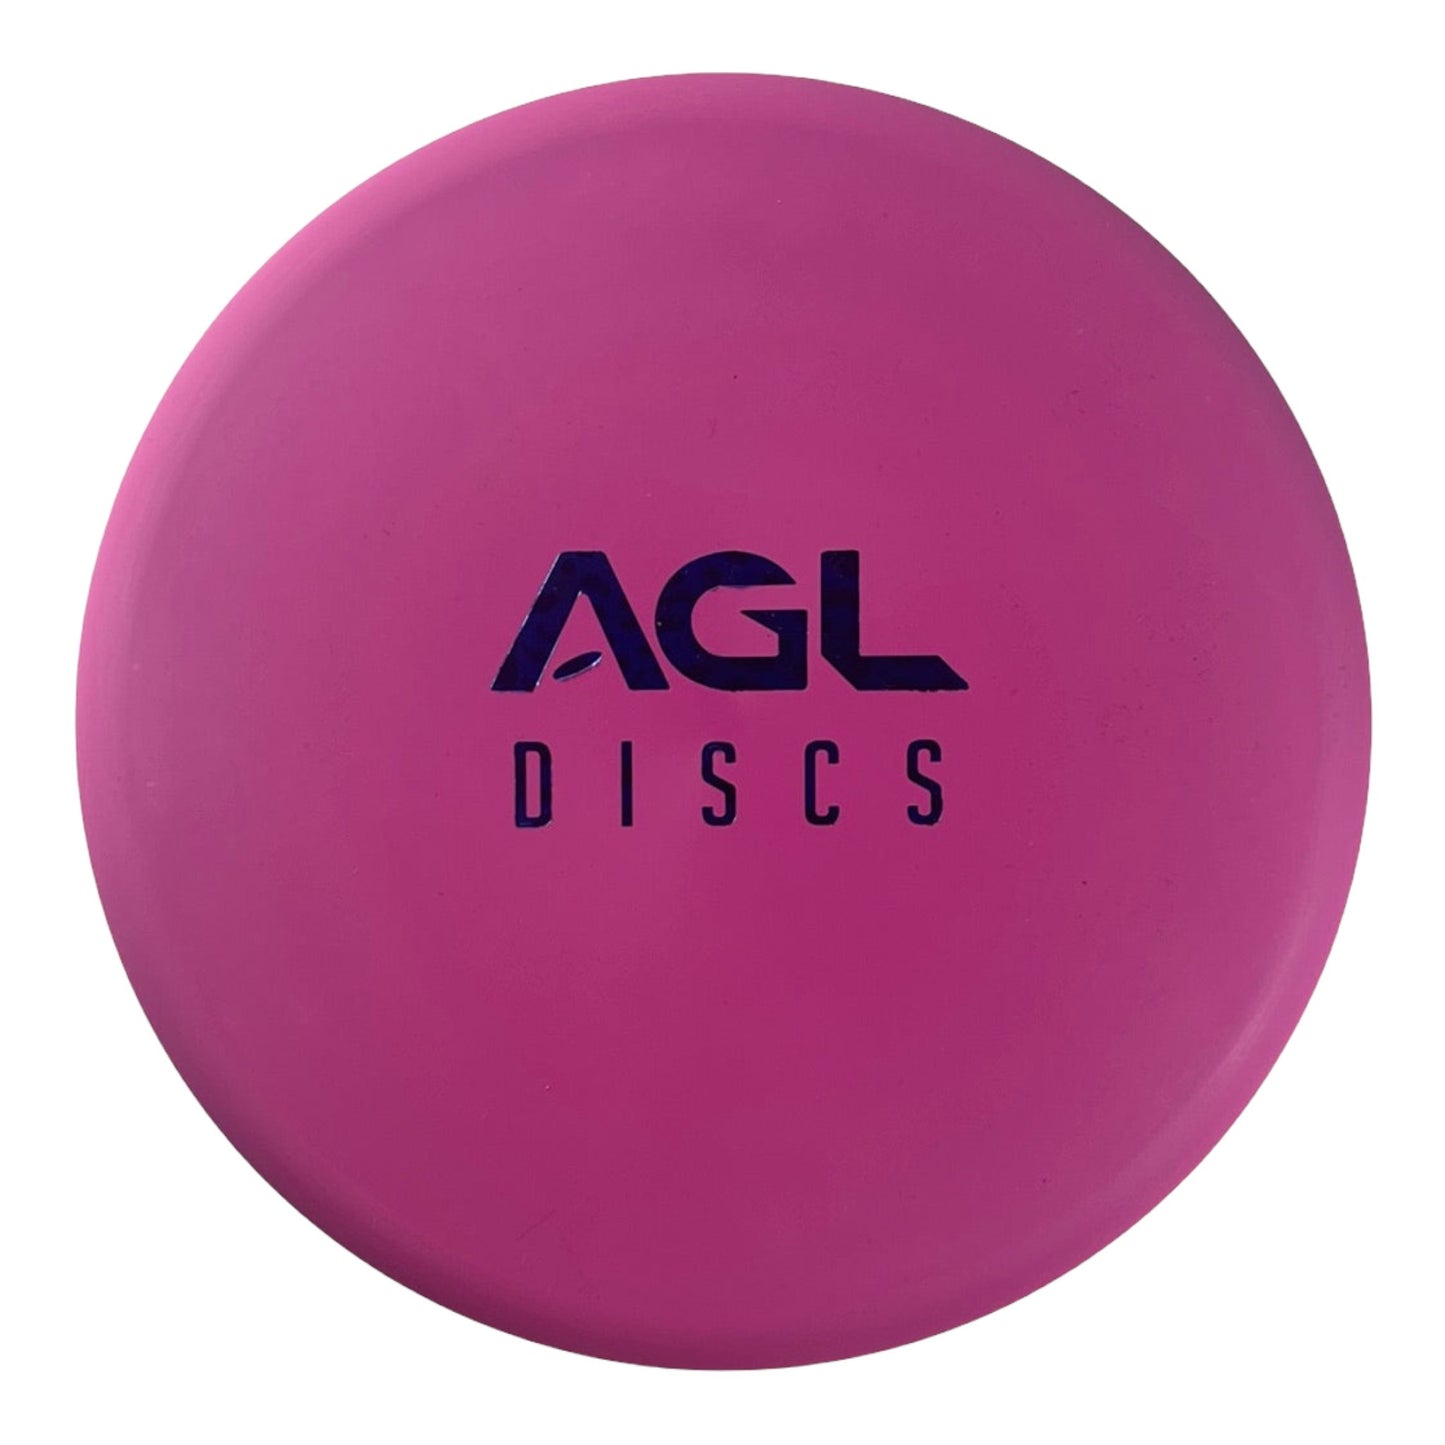 Above Ground Level Douglas Fir | Woodland | Pink/Blue 173g Disc Golf